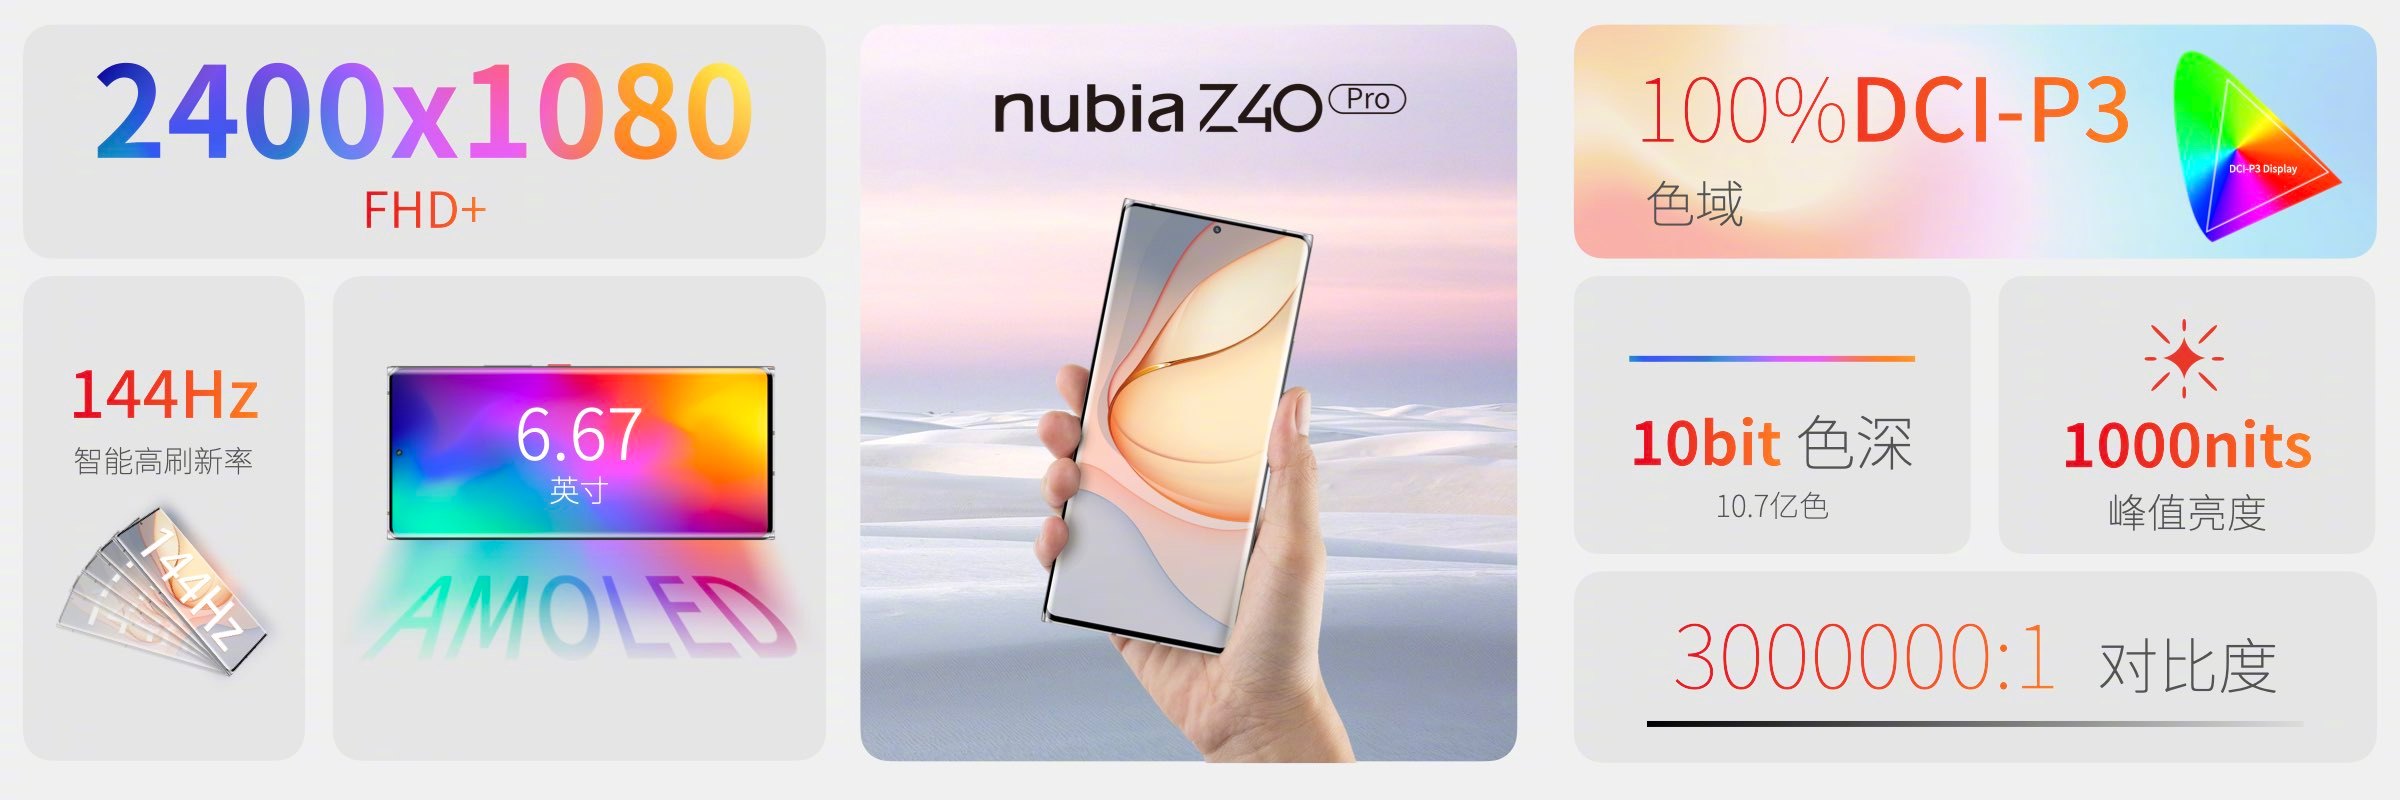 努比亚Z40 Pro发布：定制人文主摄加持 3399元起